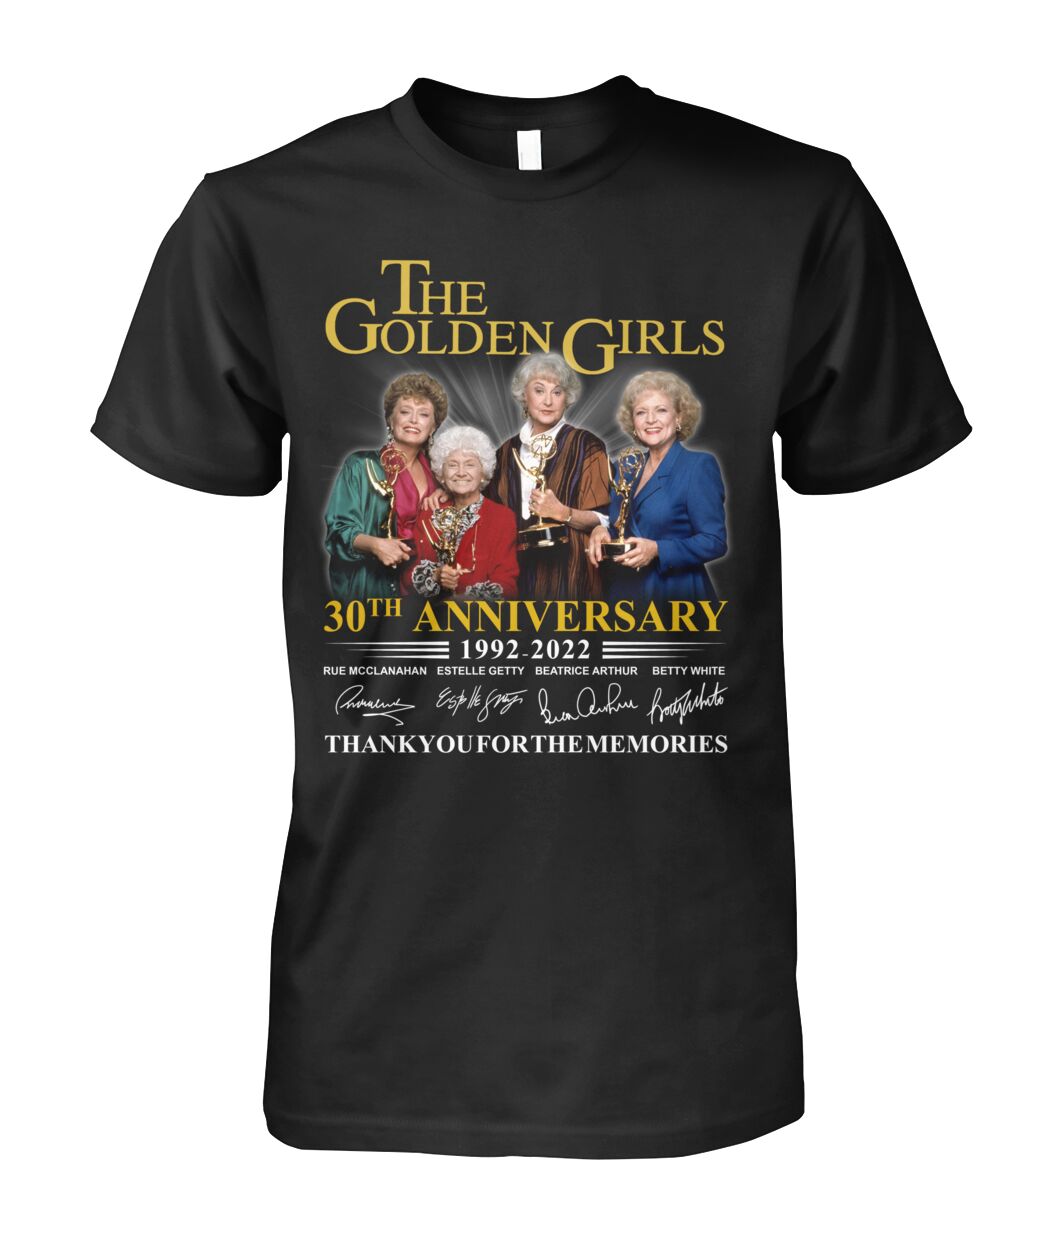 The Golden Girls 30th Anniversary 1992-2022 shirt, hoodie 16